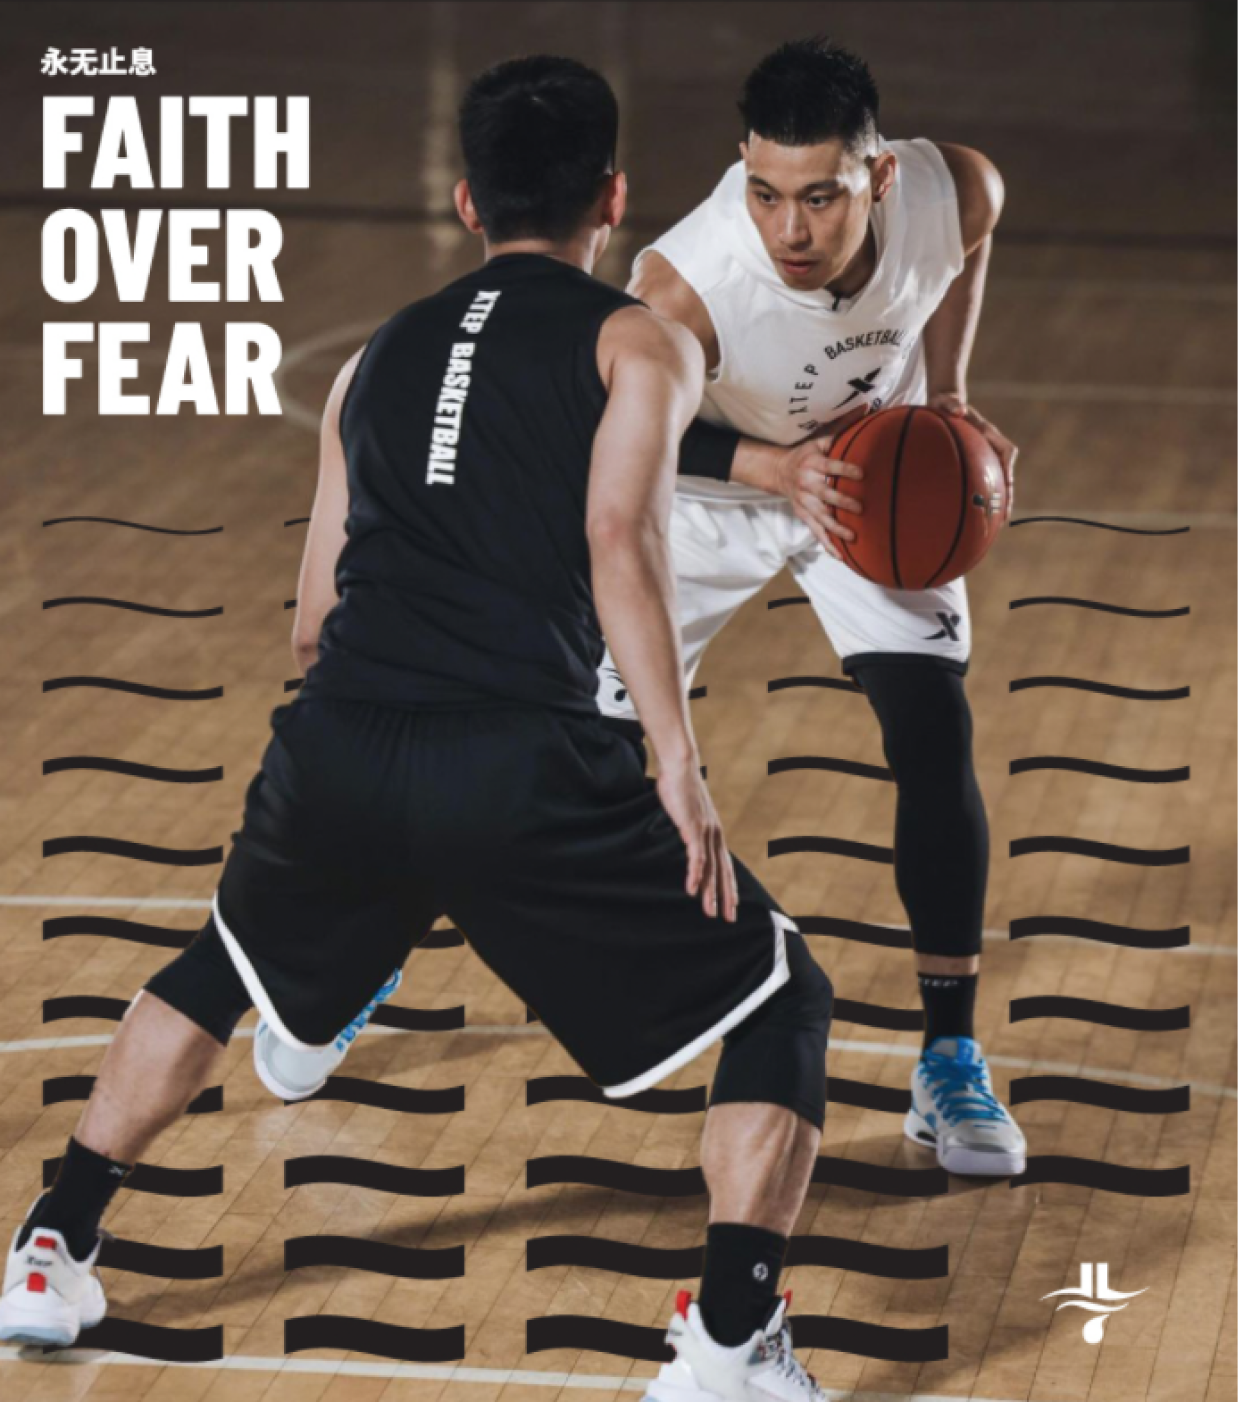 faith over fear jeremy lin basketball